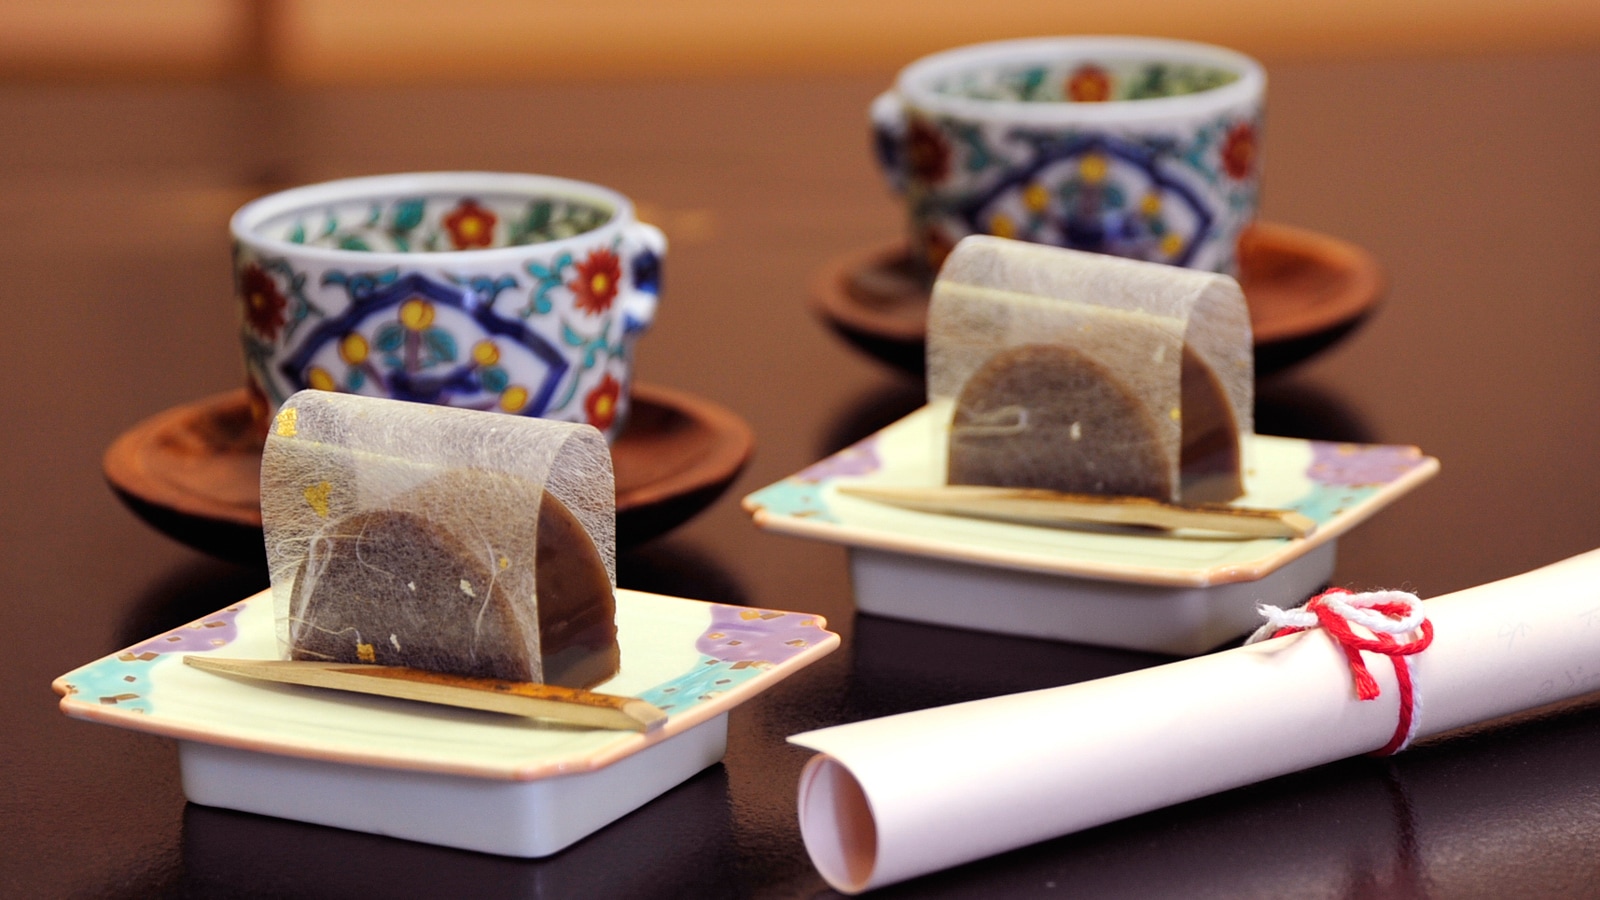 * [茶叶契约] 老板娘亲手制作的静冈茶和羊羹。我们将以真诚的款待欢迎您。